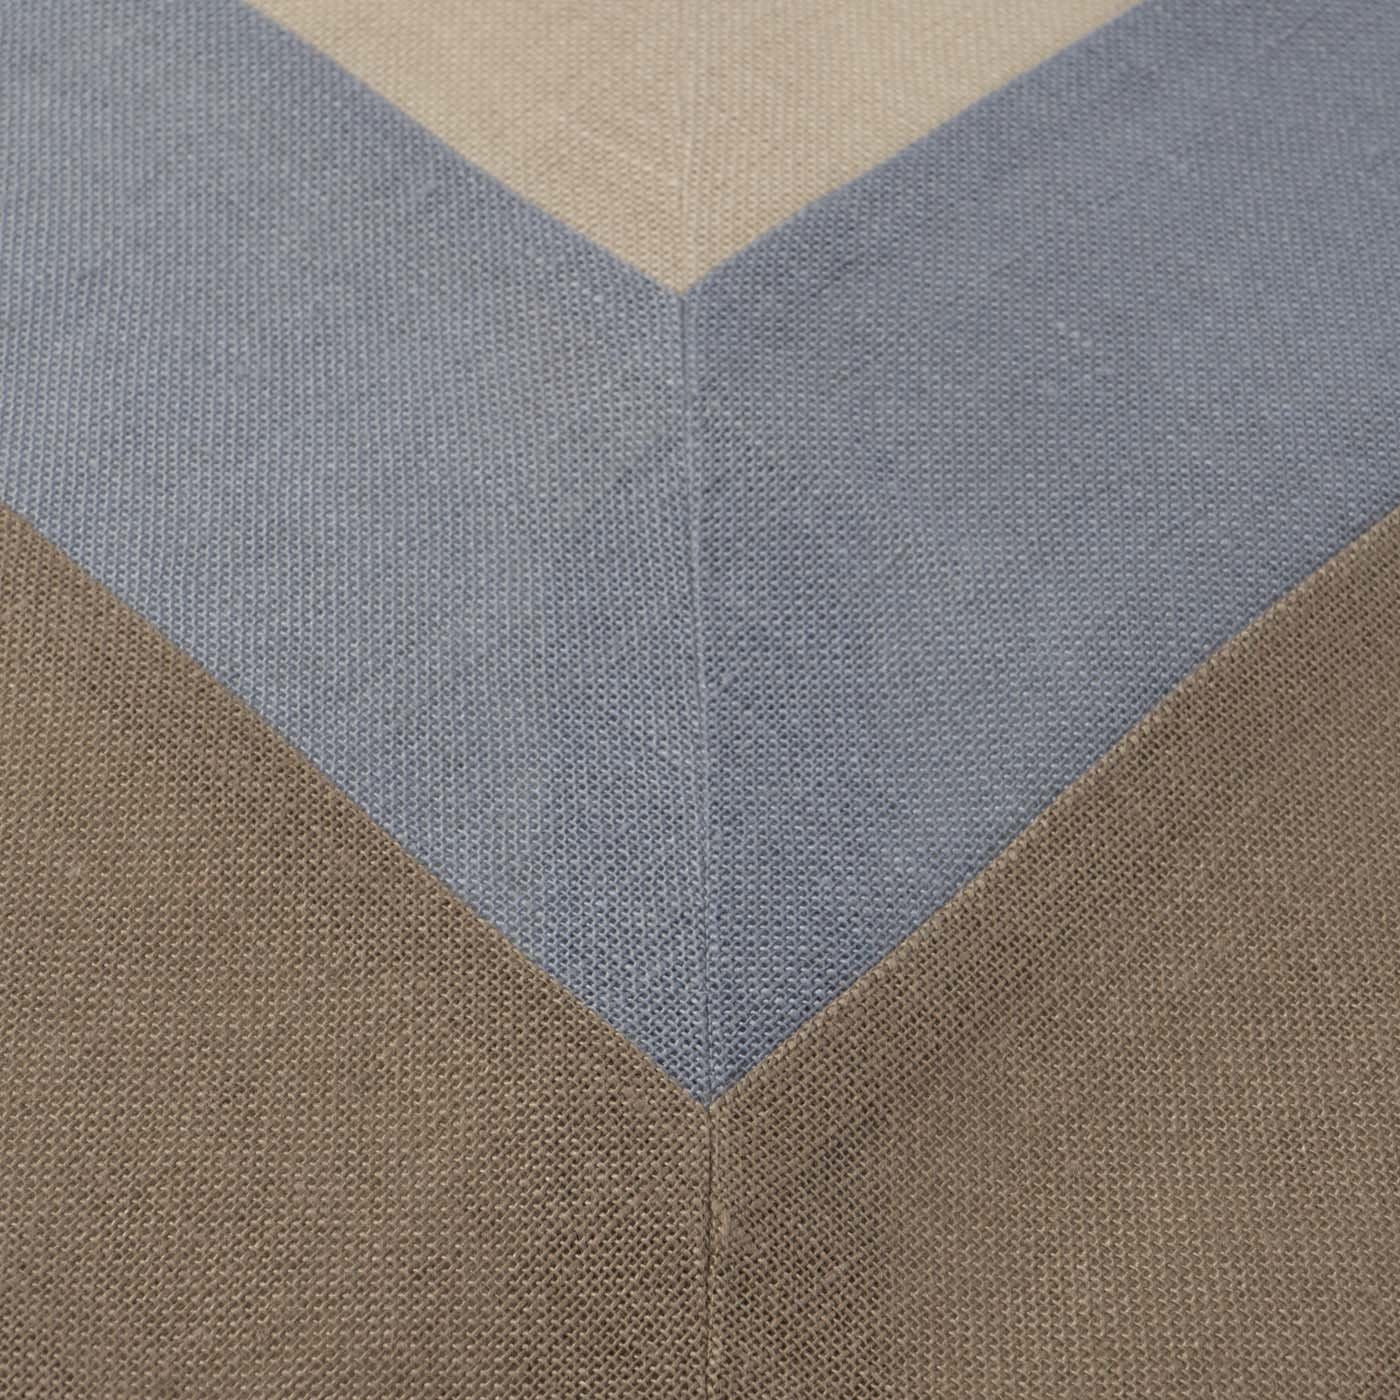 Capri Linen Tablecloth - Alternative view 1